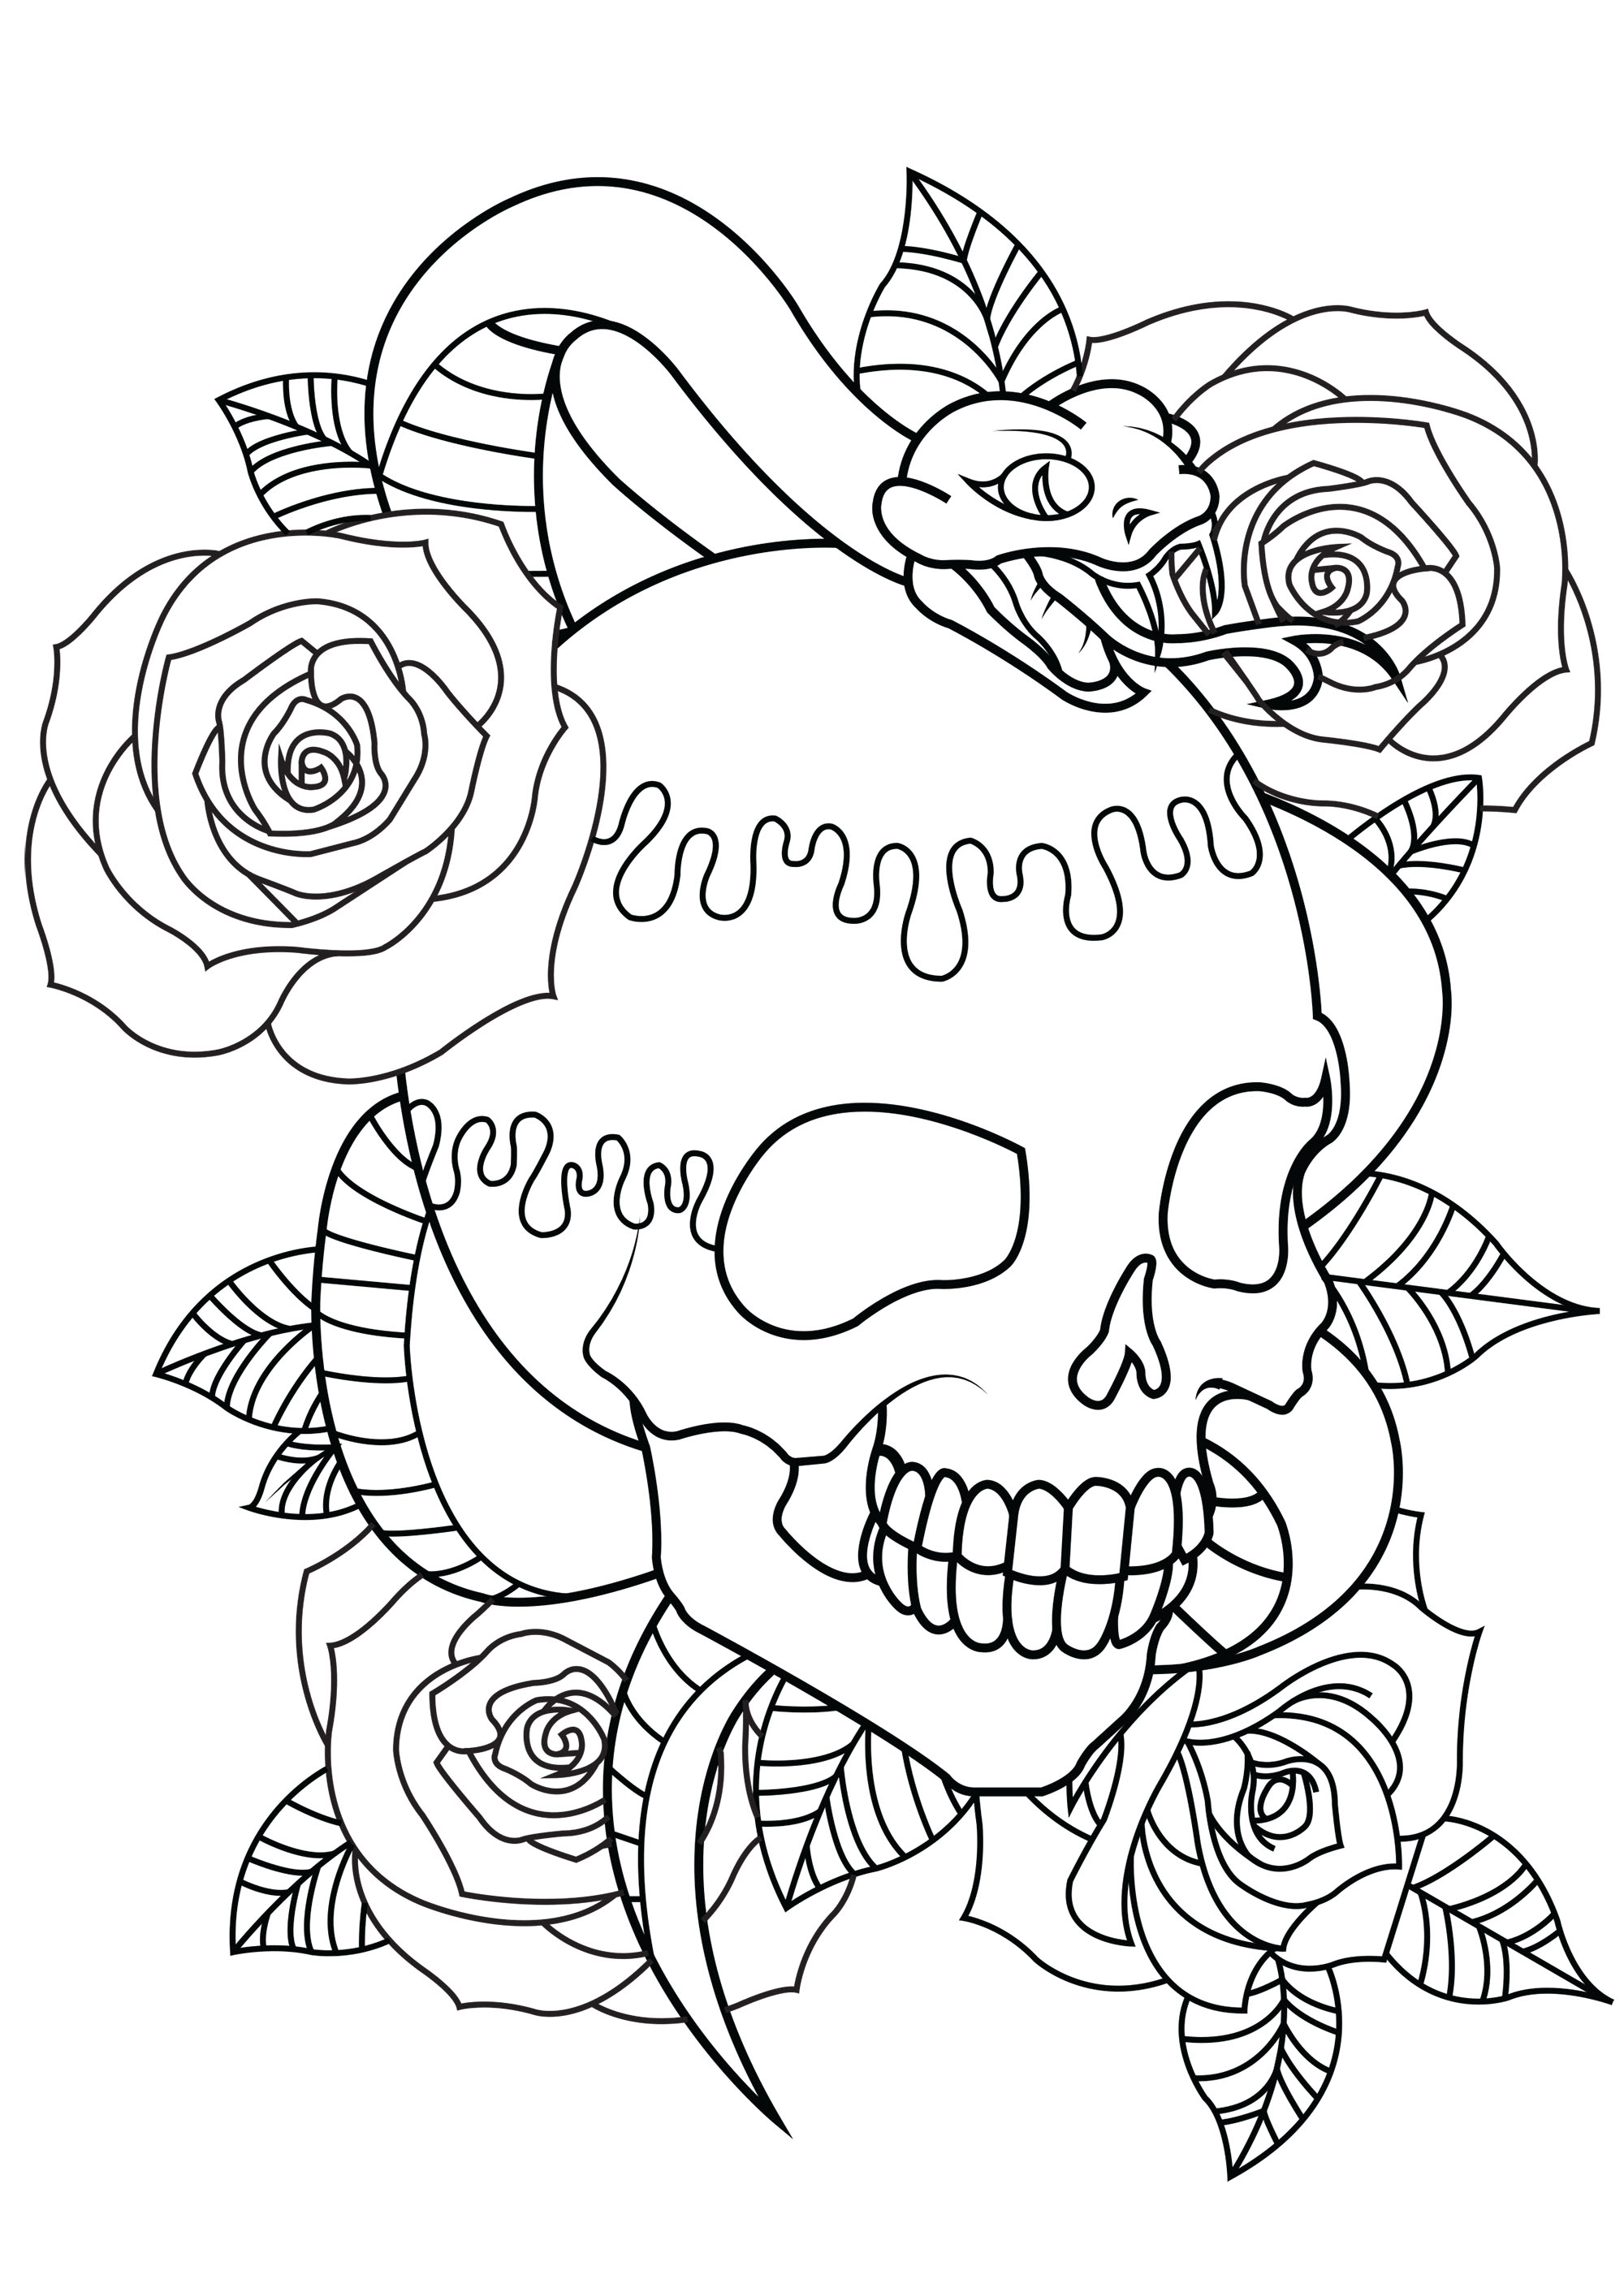 Cor com tatuagem que contém uma caveira, uma cobra e belas rosas com folhas